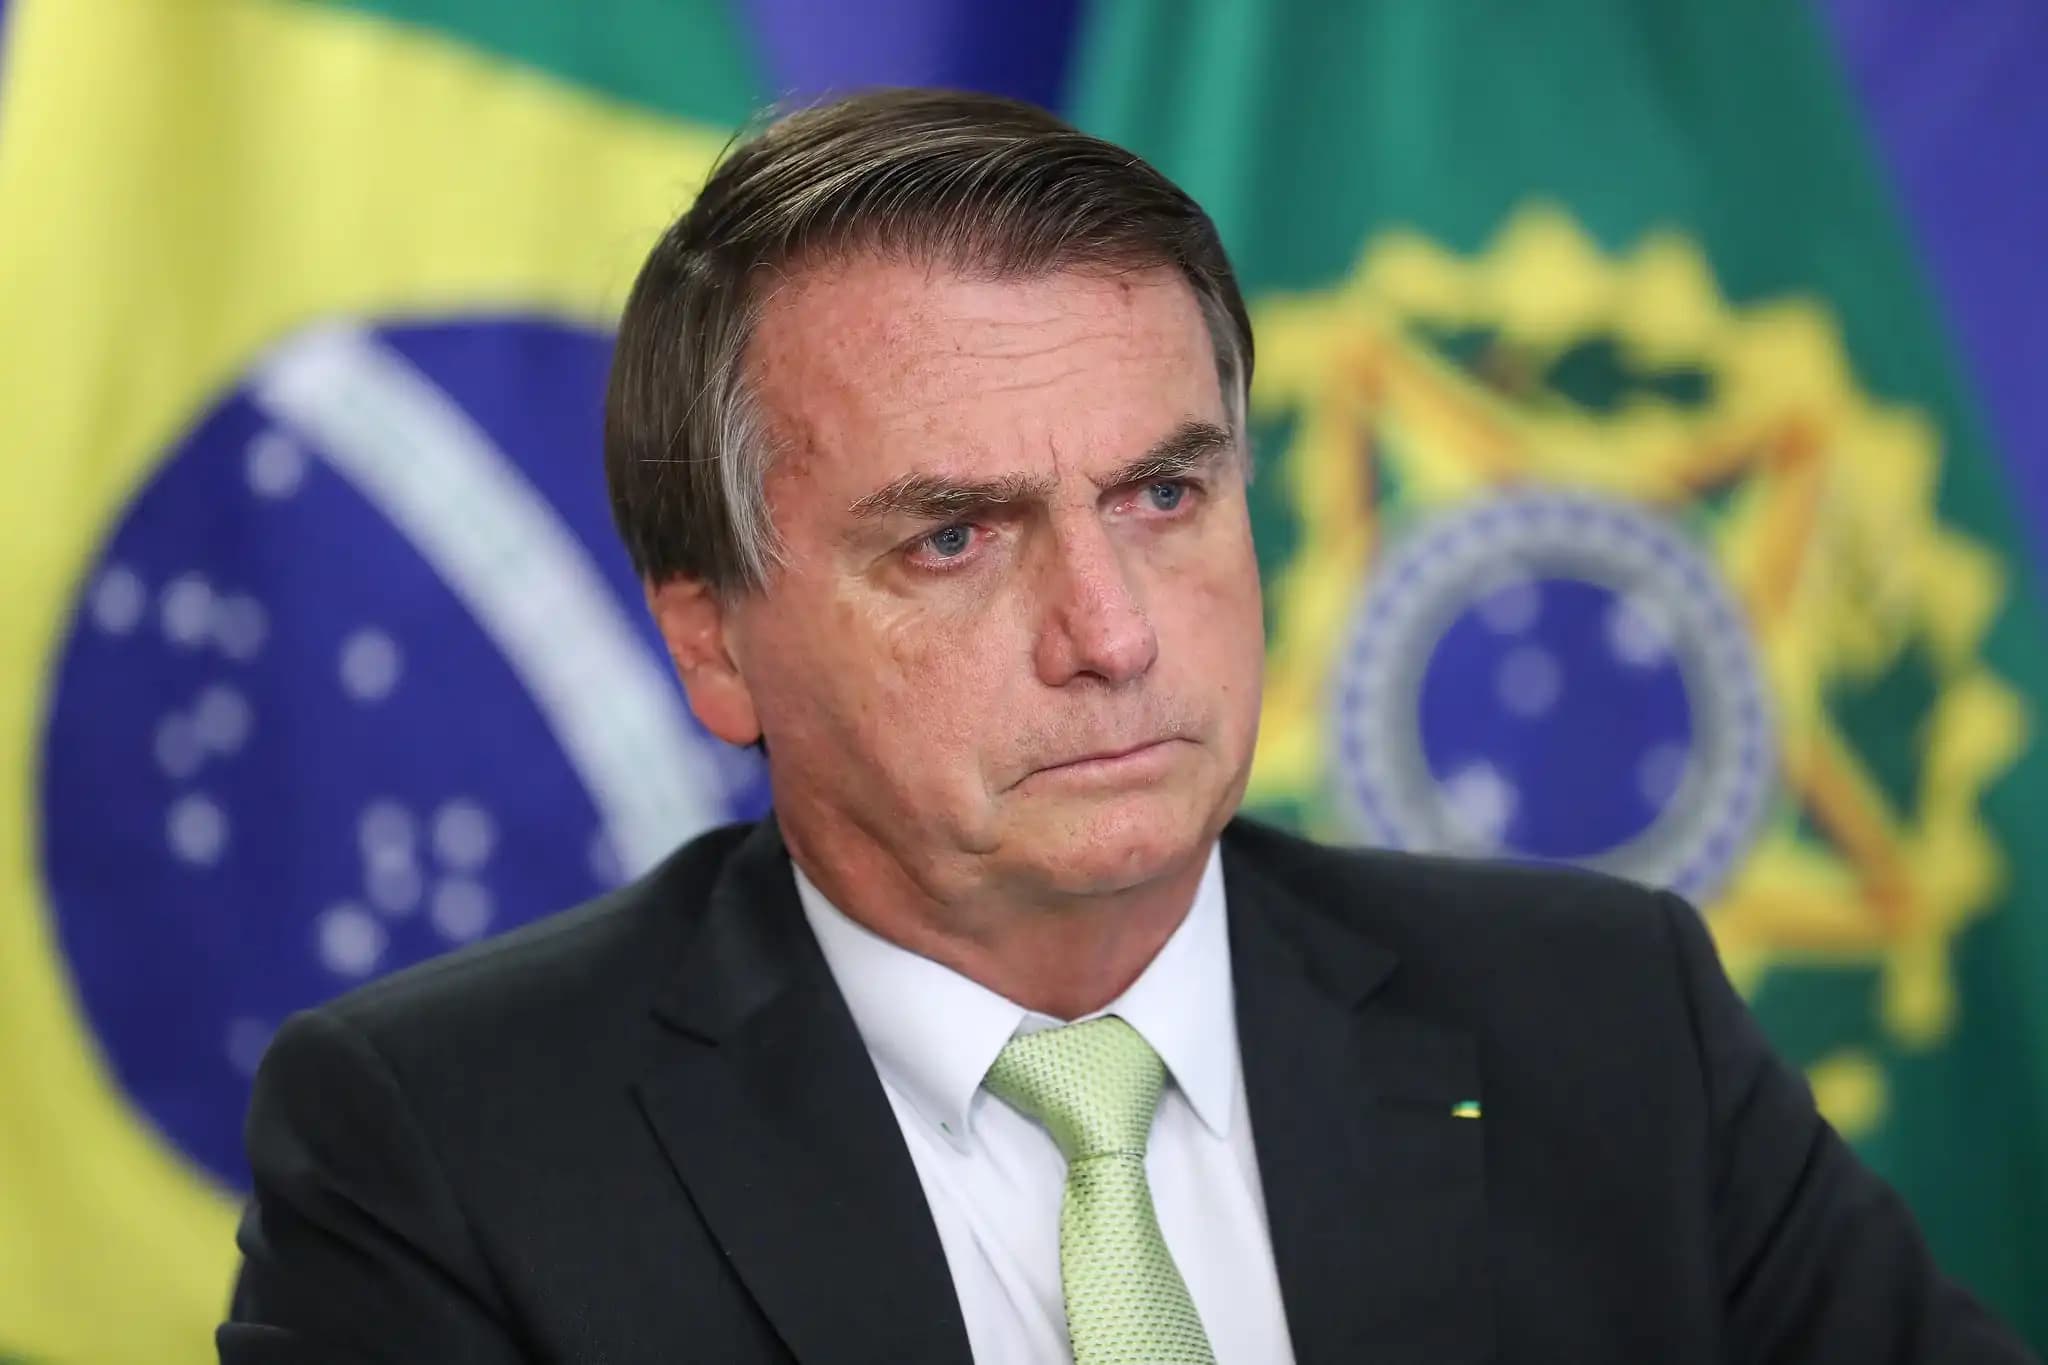 O Partido Liberal confirmou, na última segunda-feira, 27 de março de 2023, que Jair Bolsonaro (PL) assumirá a presidência de honra do partido assim que retornar ao Brasil, na próxima quinta-feira, 30 de março de 2023.